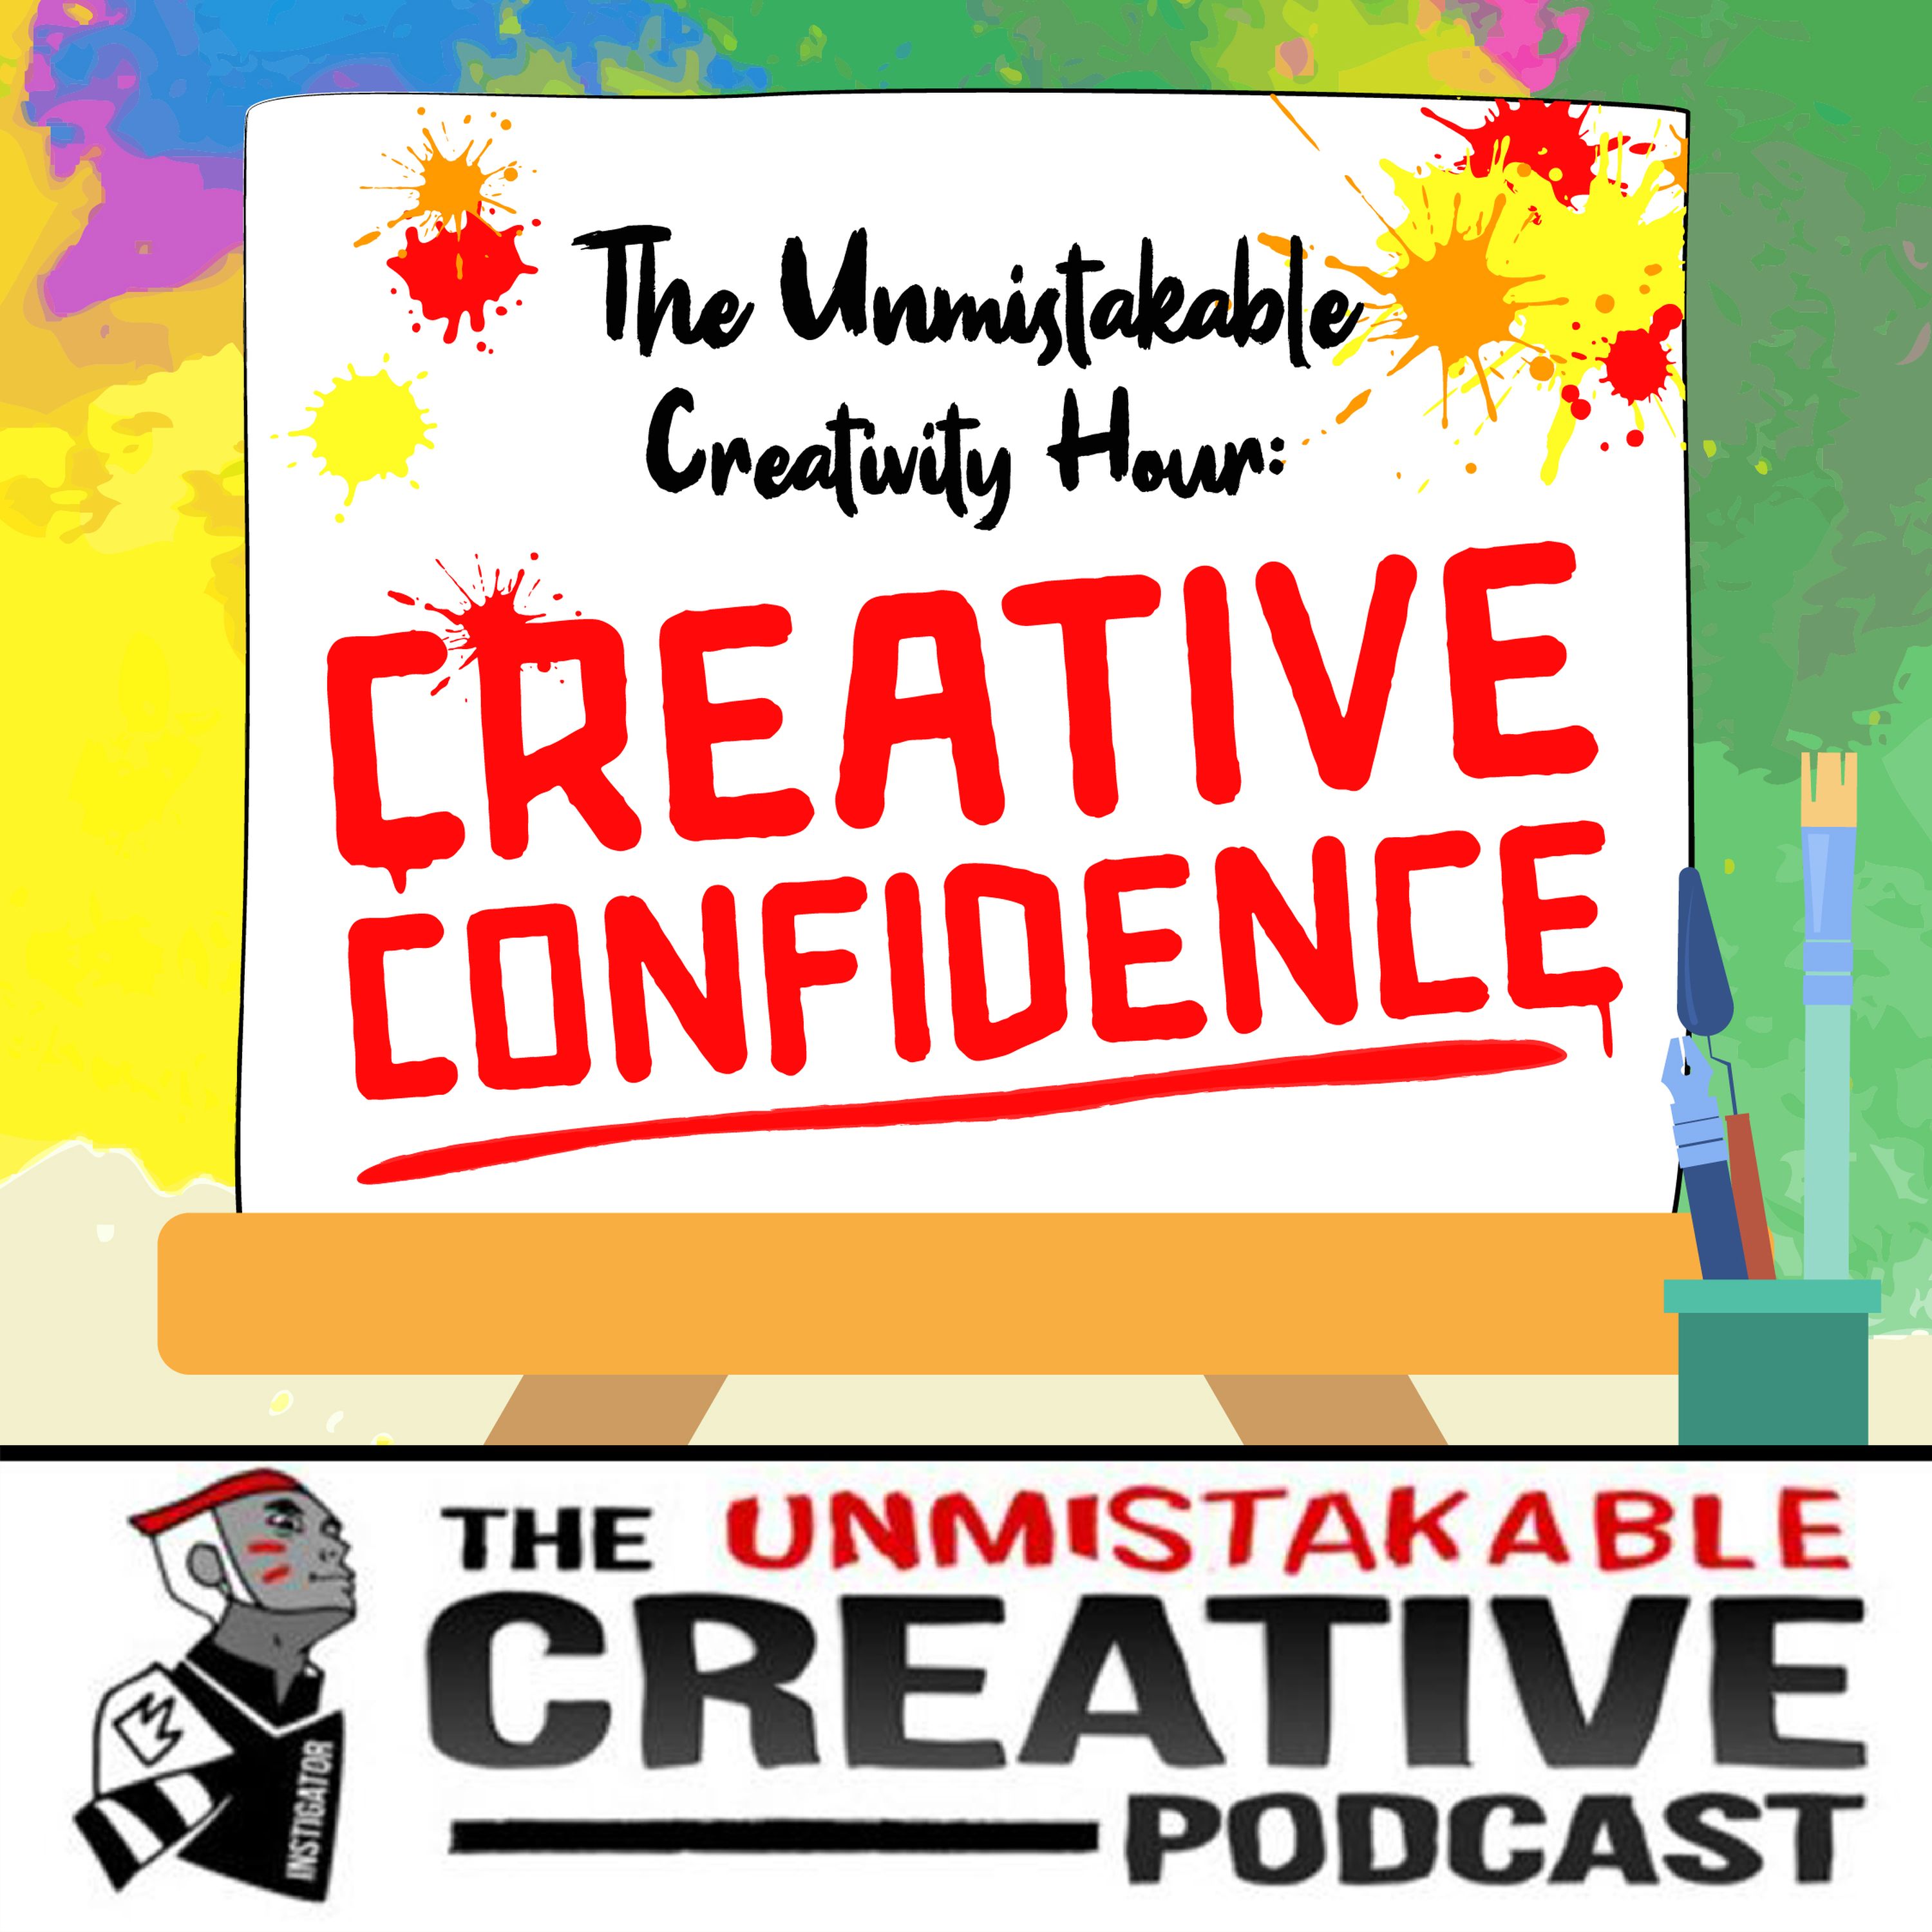 The Unmistakable Creativity Hour